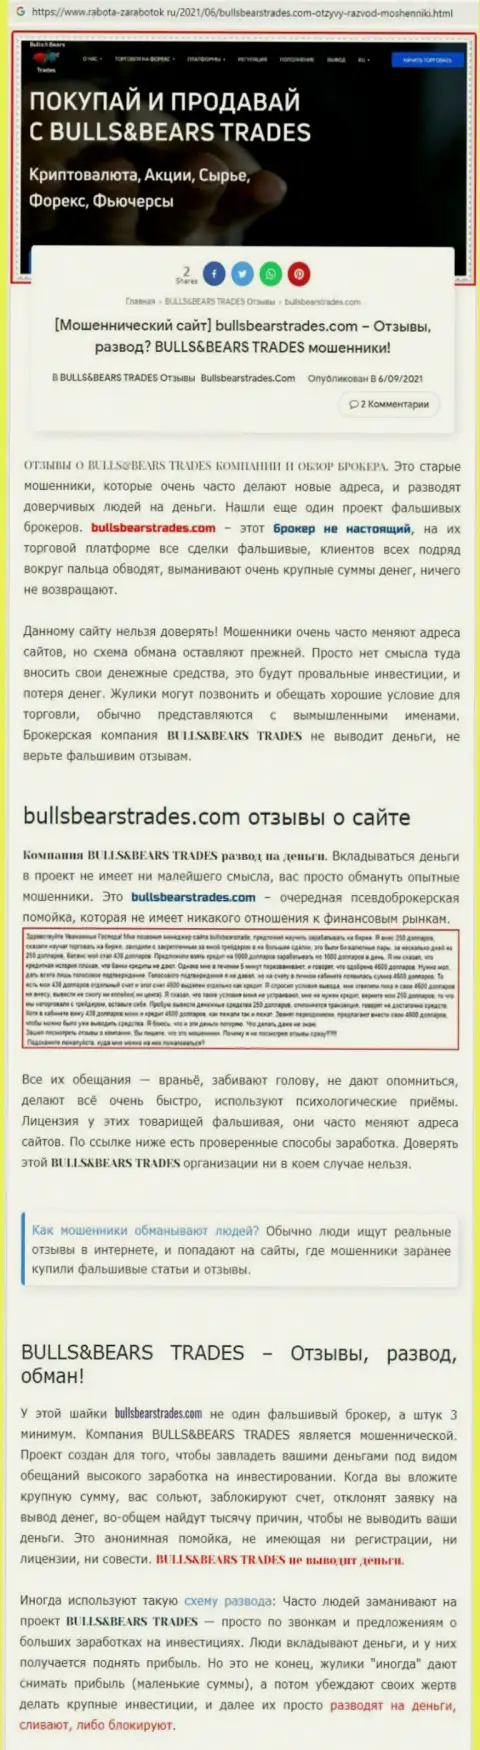 Обзор противозаконно действующей конторы BullsBearsTrades о том, как обворовывает до последней копейки наивных клиентов